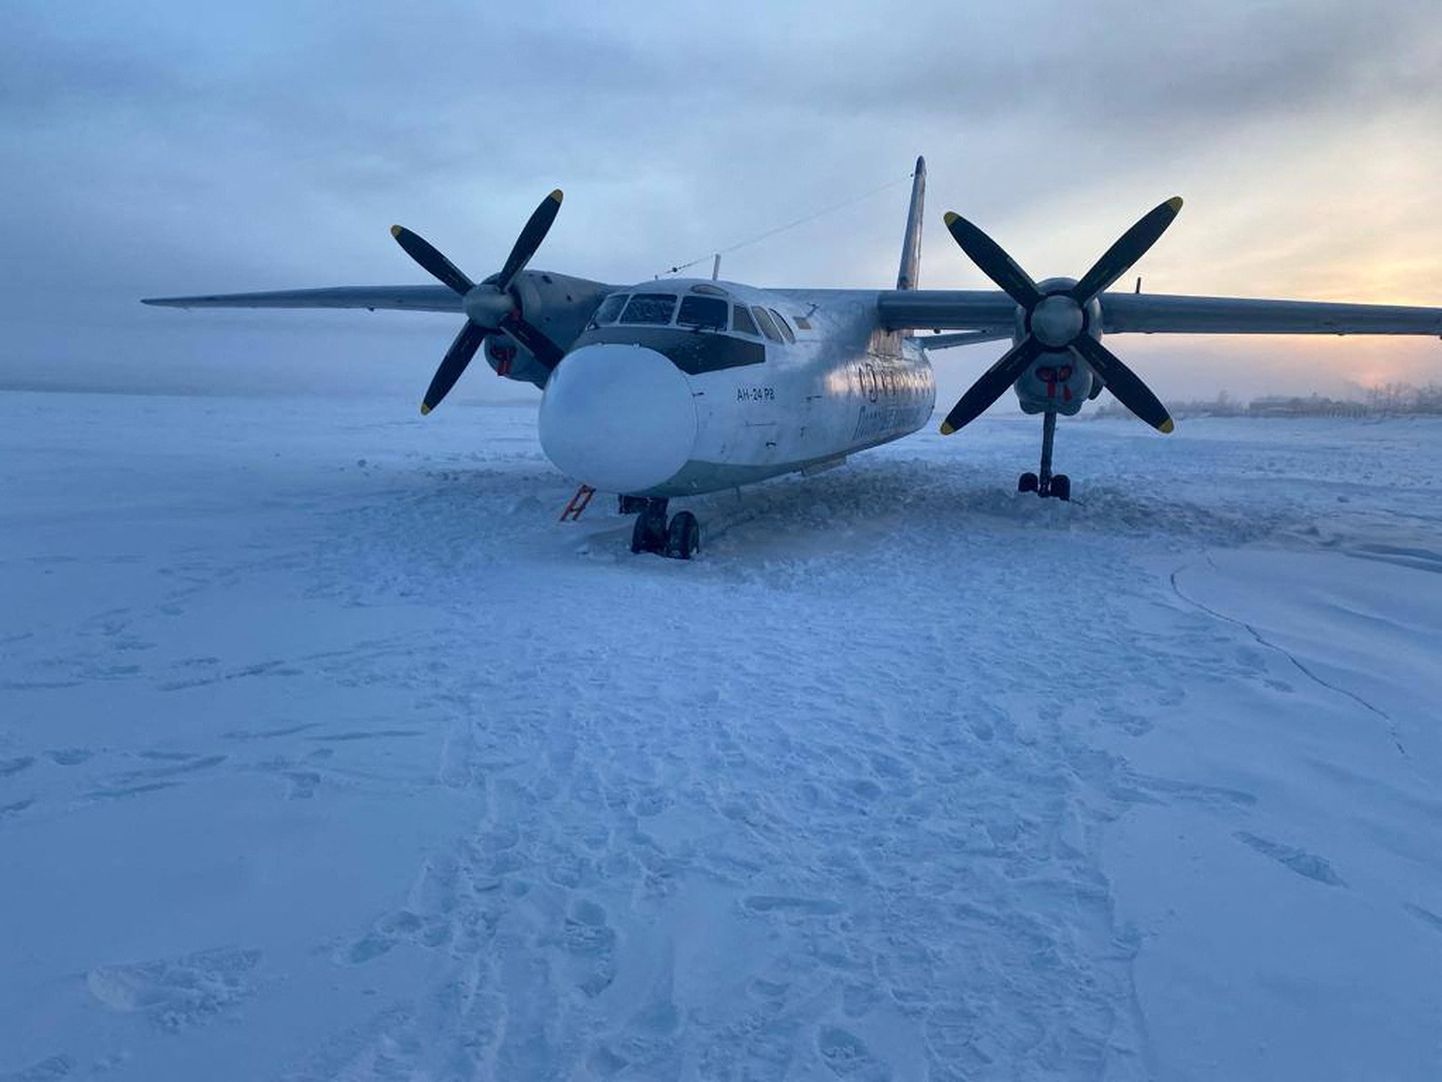 Polar Airlinesi An-24 ( Antonov-24) reisilennuk maandus detsembri lõpus Jakuutias Kolõma jõele.